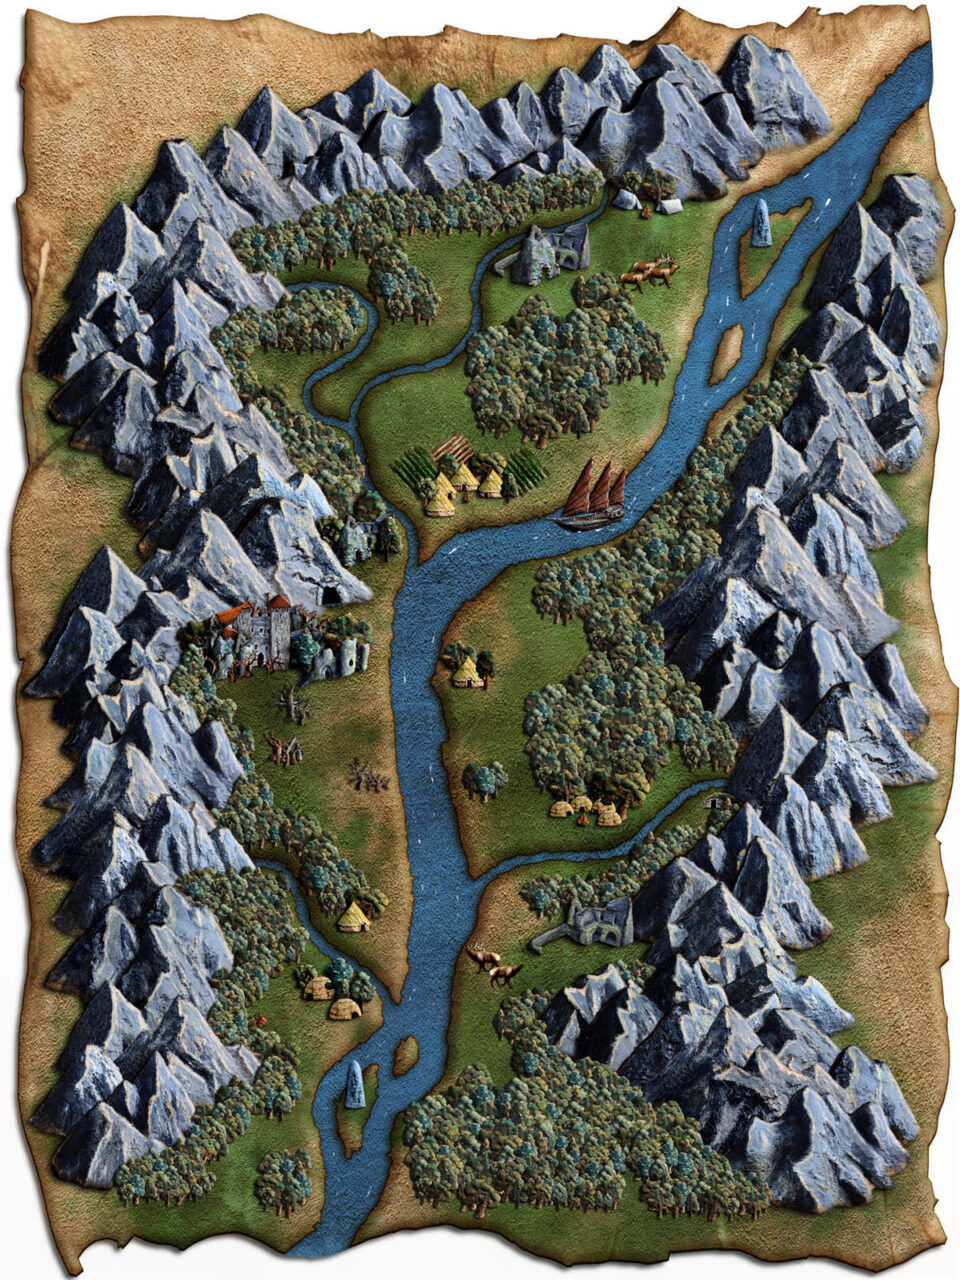 Hidden Valleys Map Digital Asset Pack River